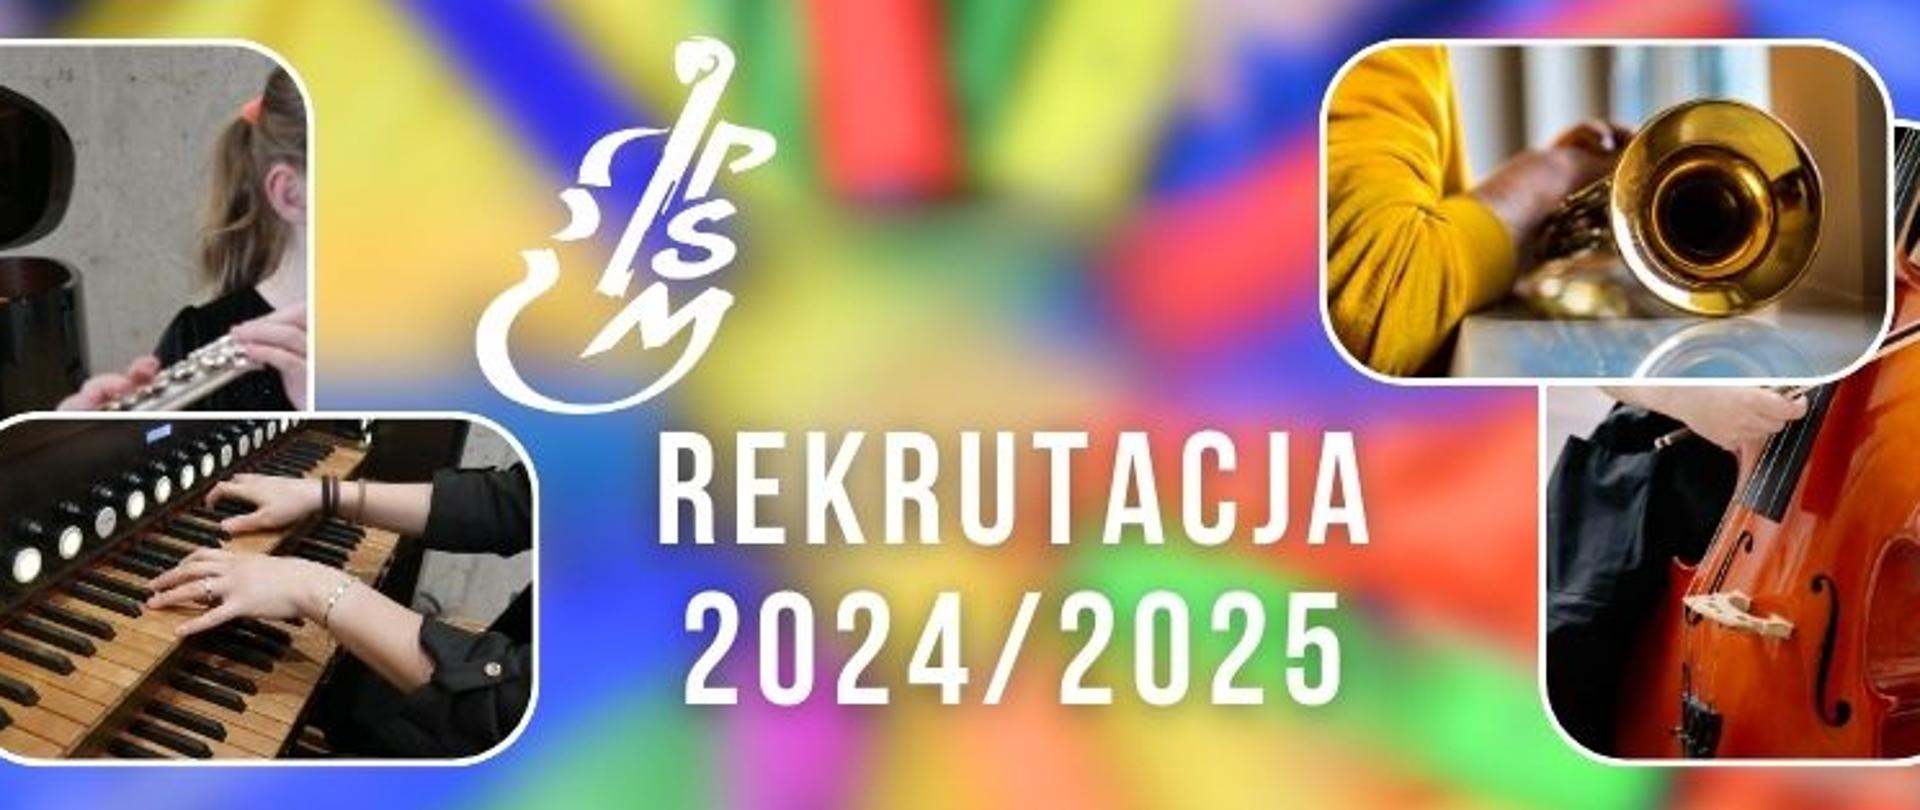 Kolorowy plakat z logo szkoły z napisem Rekrutacja 2024/2025, zdjęcia detali instrumentów